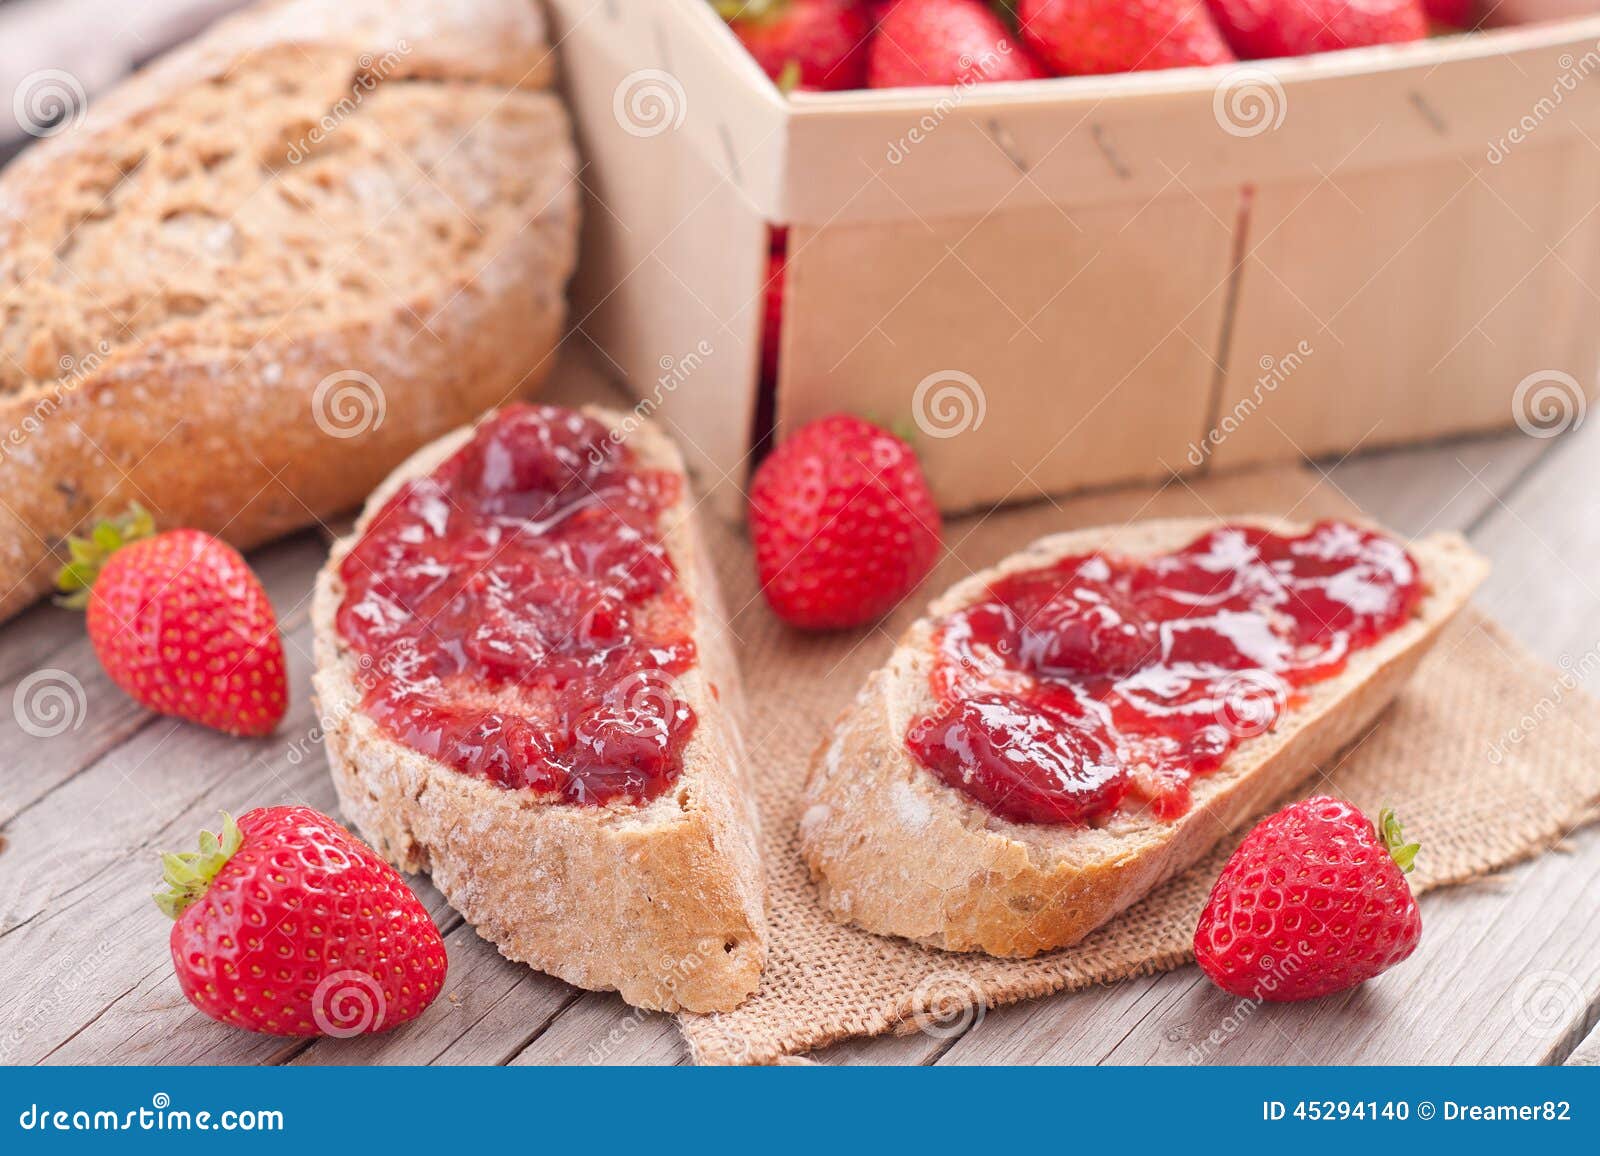 全麦面包切片和草莓 库存图片. 图片 包括有 制动手, 膳食, 食物, 饮食, 背包, 片式, 全部, 巴西 - 53907209